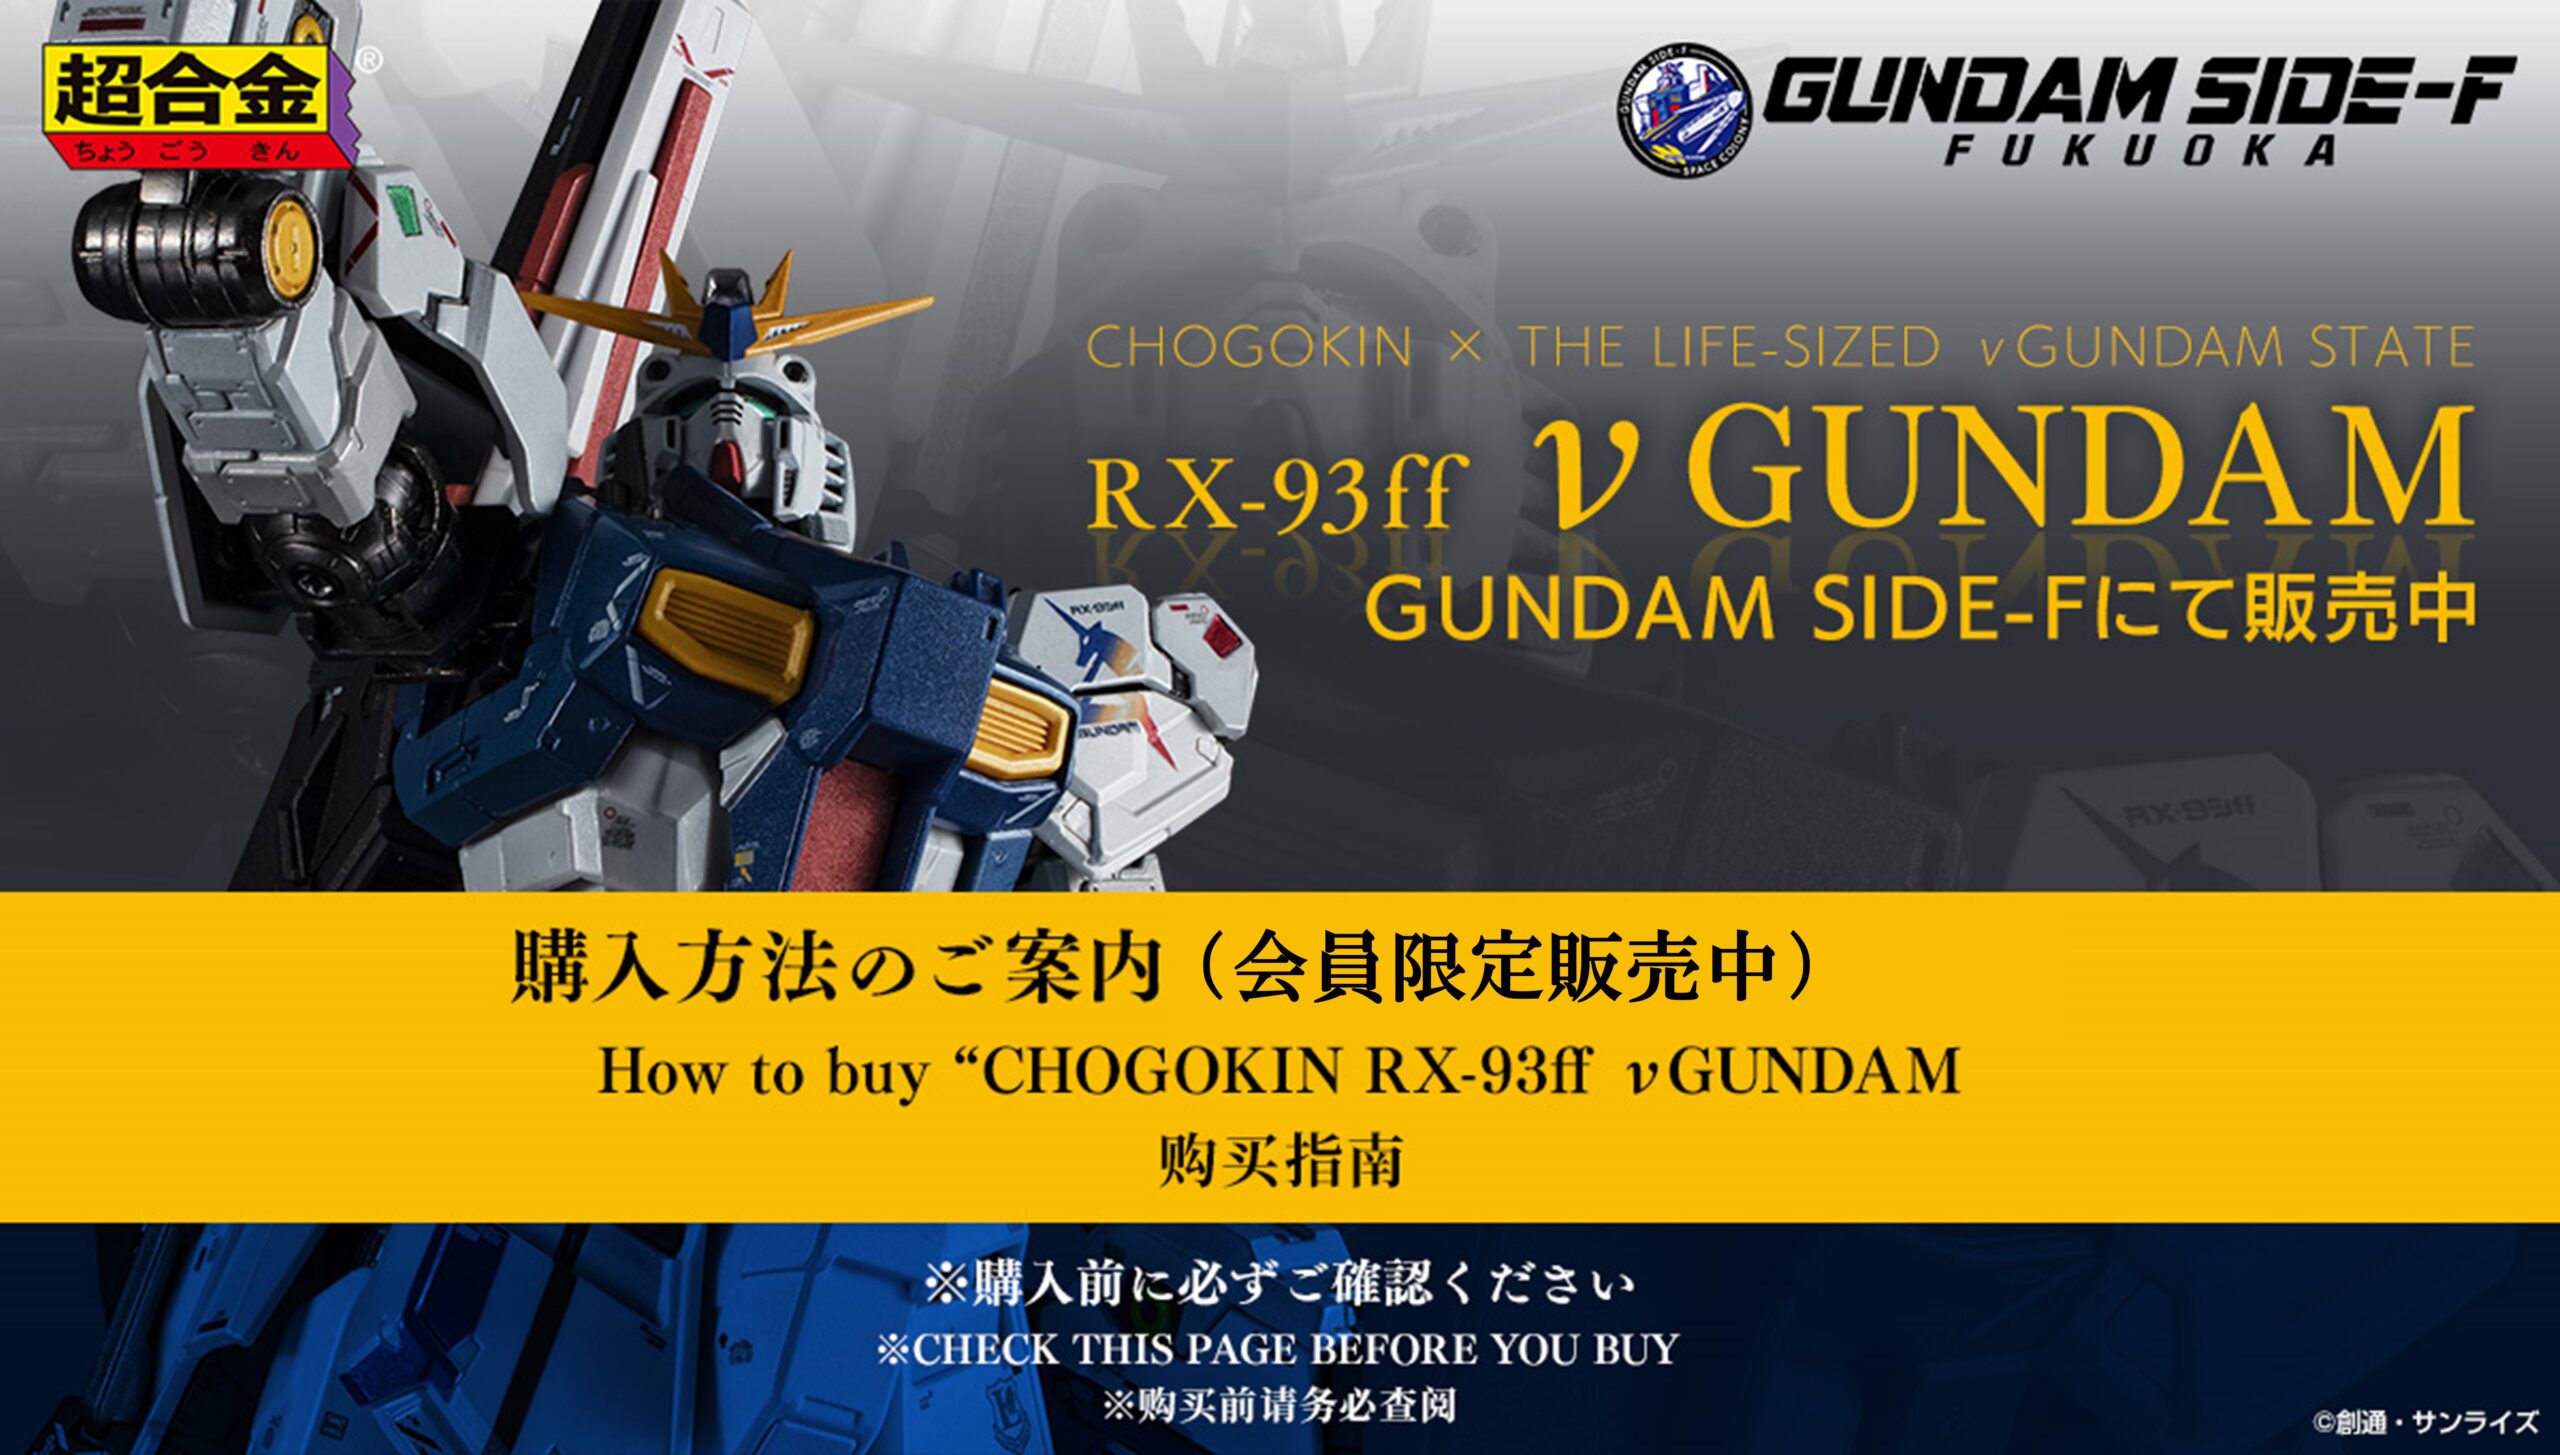 超合金 RX-93ff νガンダム ららぽーと福岡 GUNDAM SIDE-F - アニメ/ゲーム